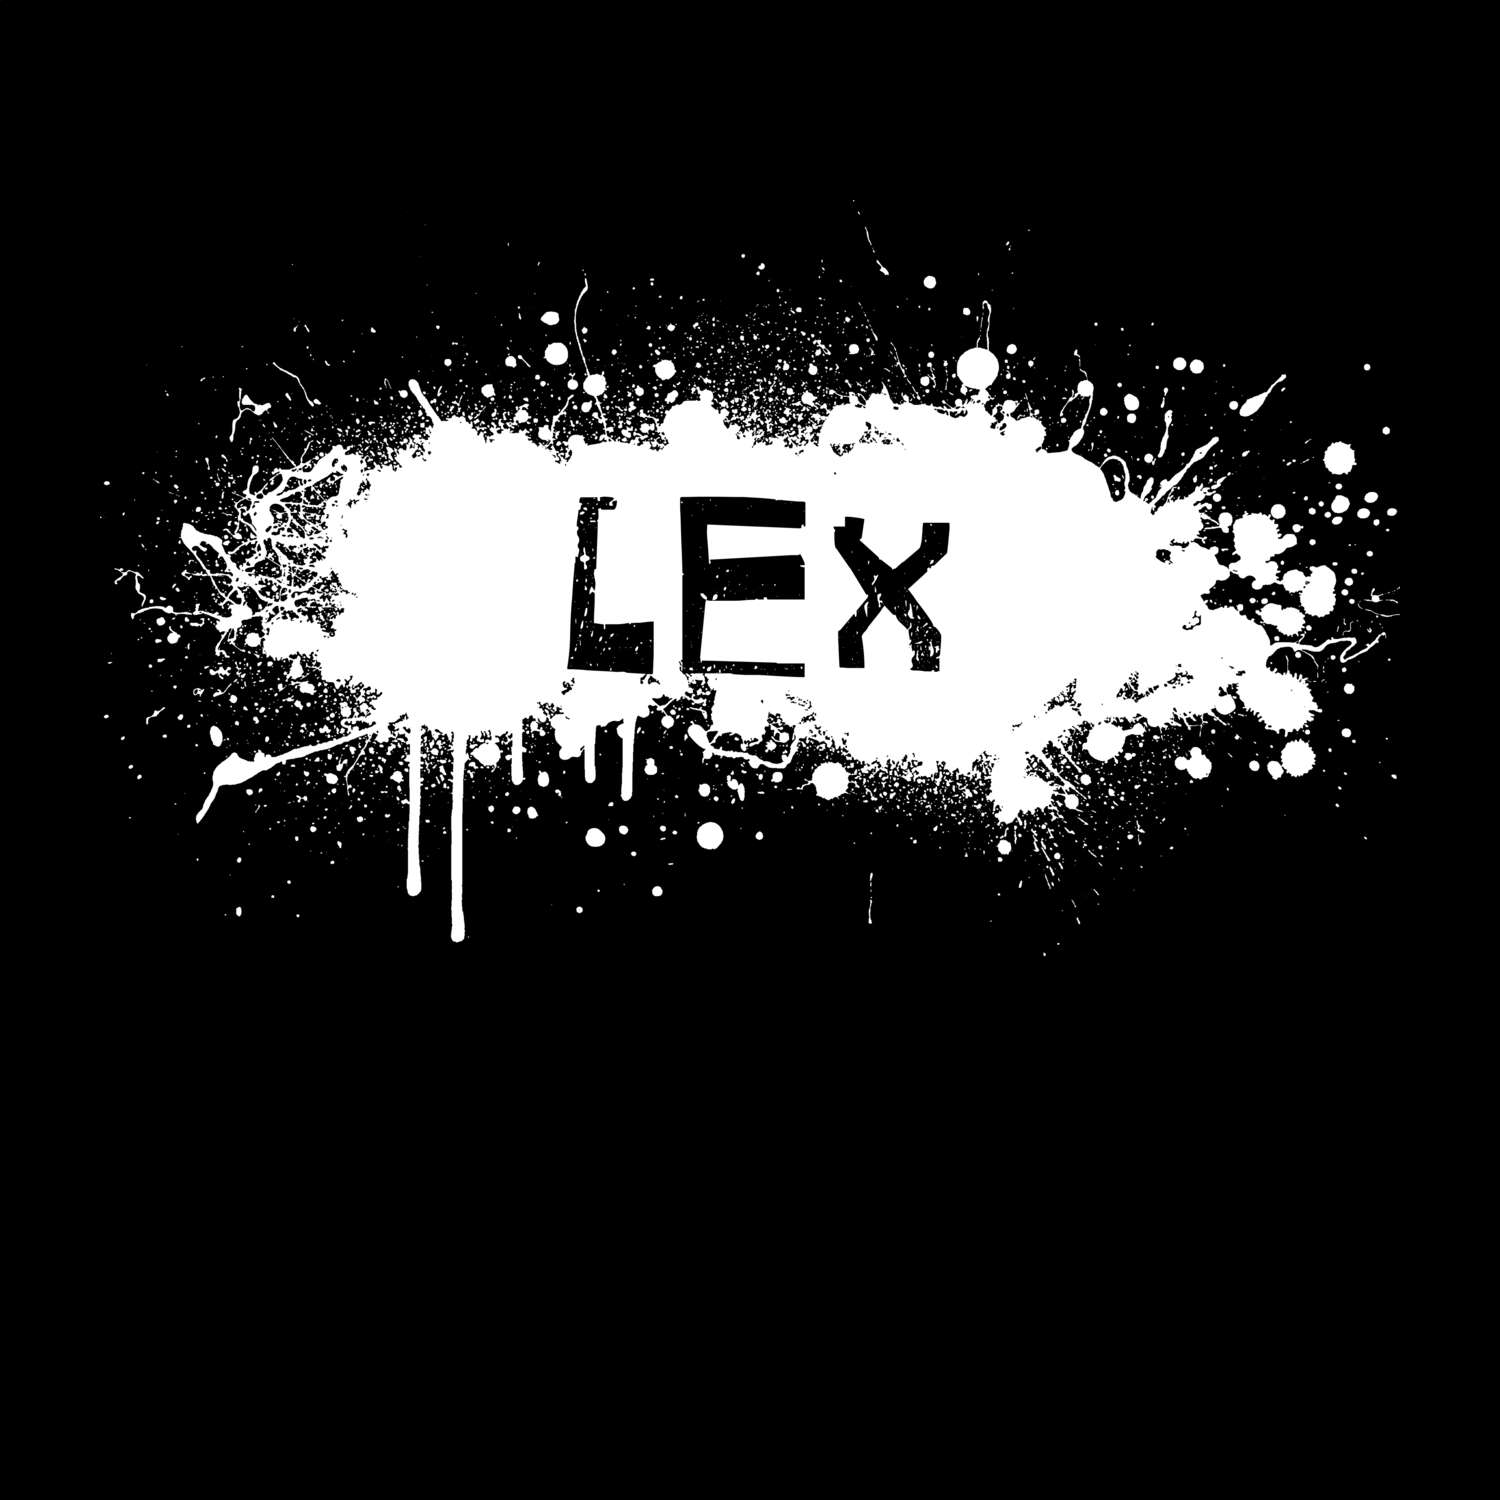 Lex T-Shirt »Paint Splash Punk«